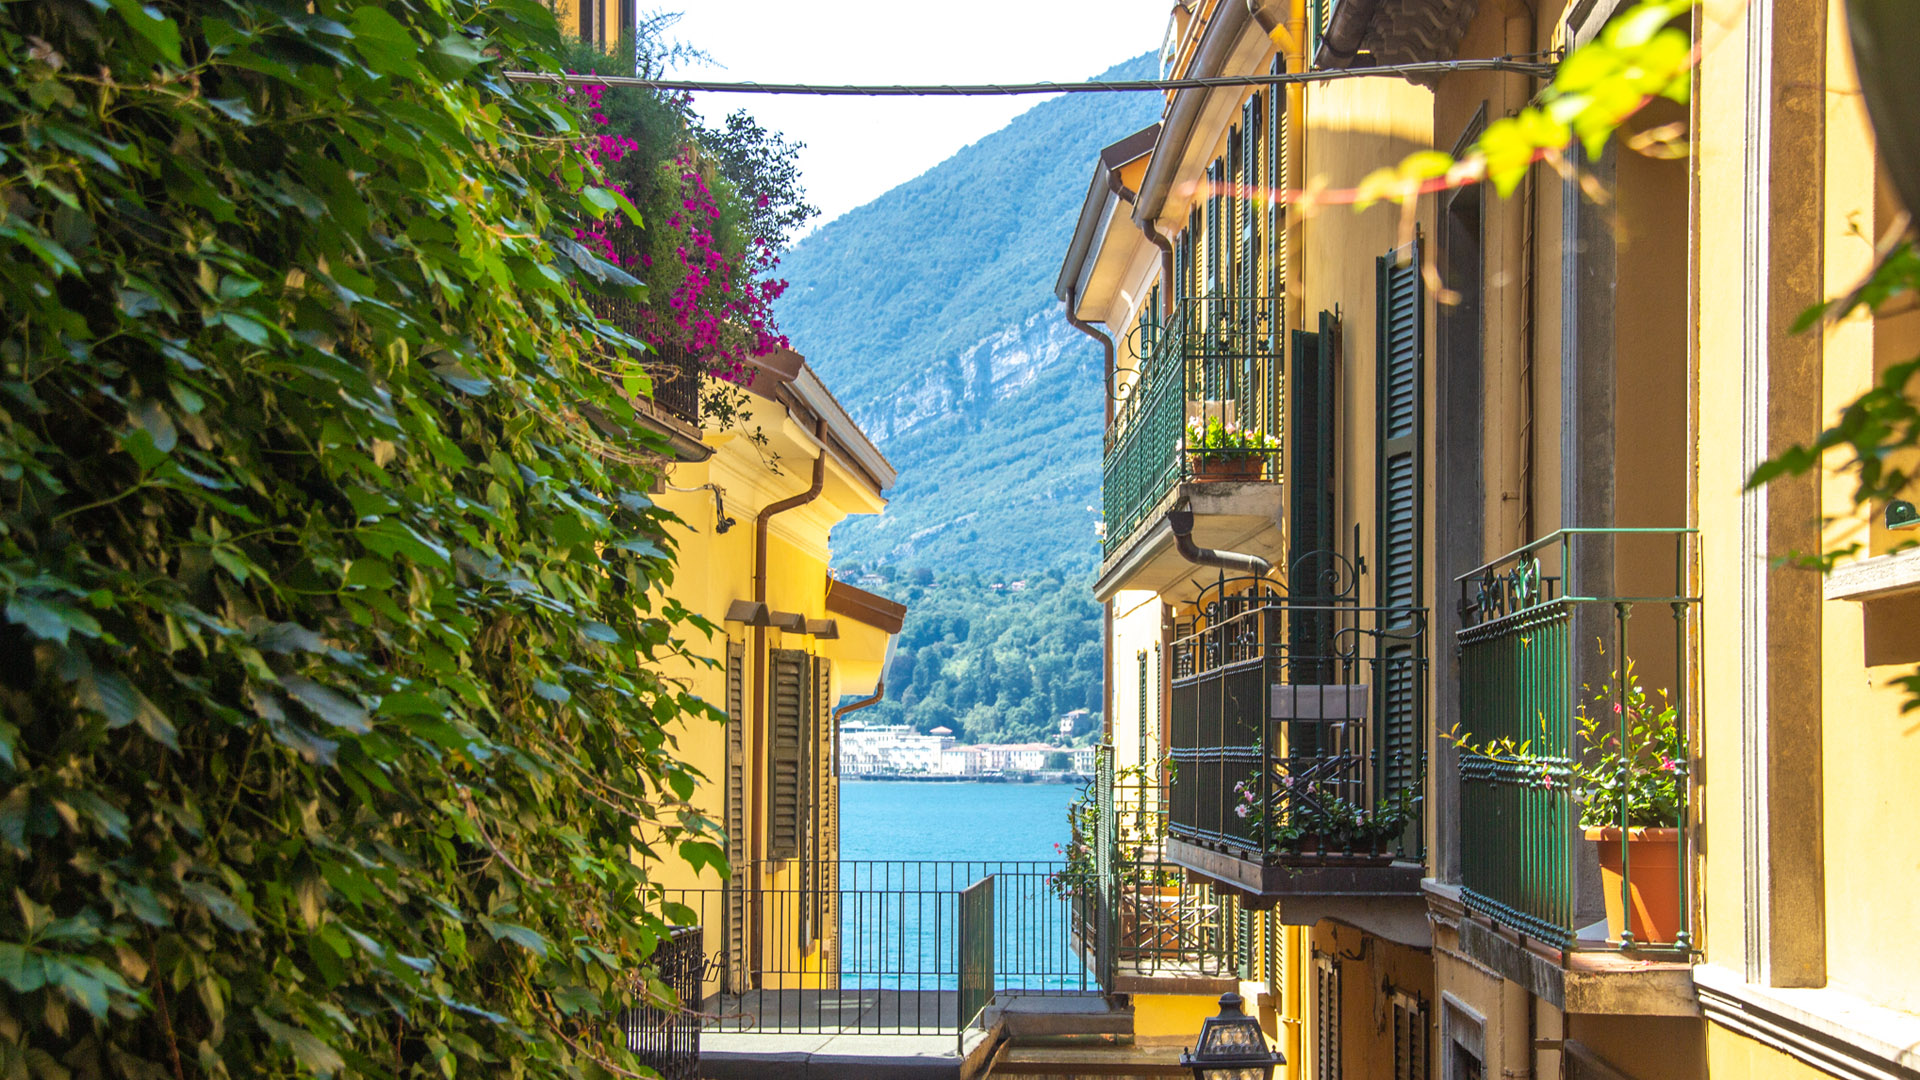 Bellagio, Lago de Como